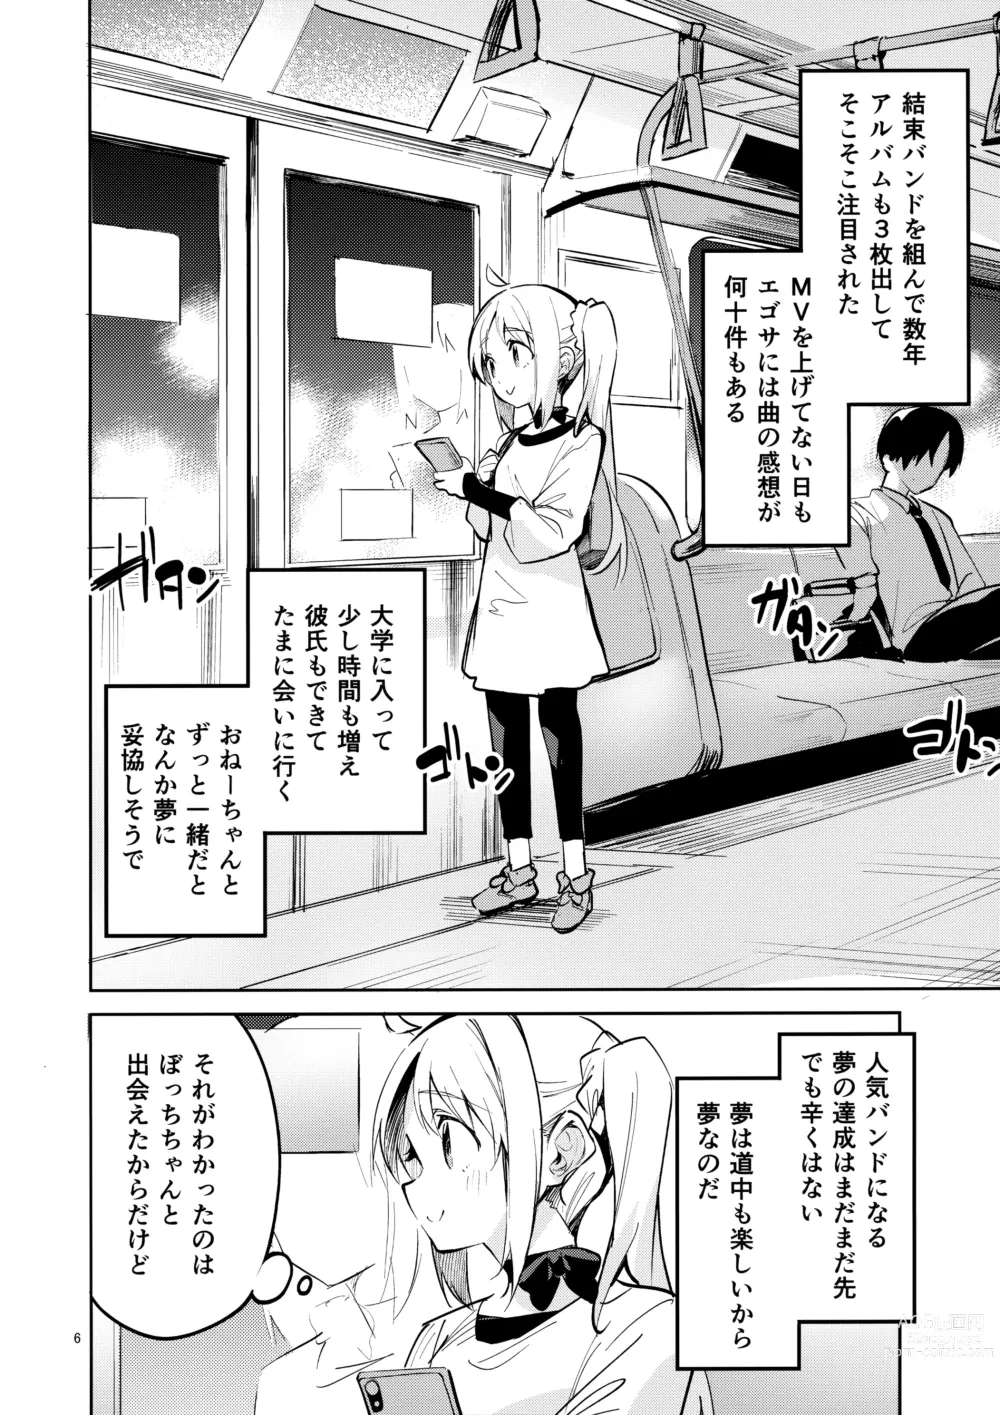 Page 5 of doujinshi Yume ga Uta o Utau no da!